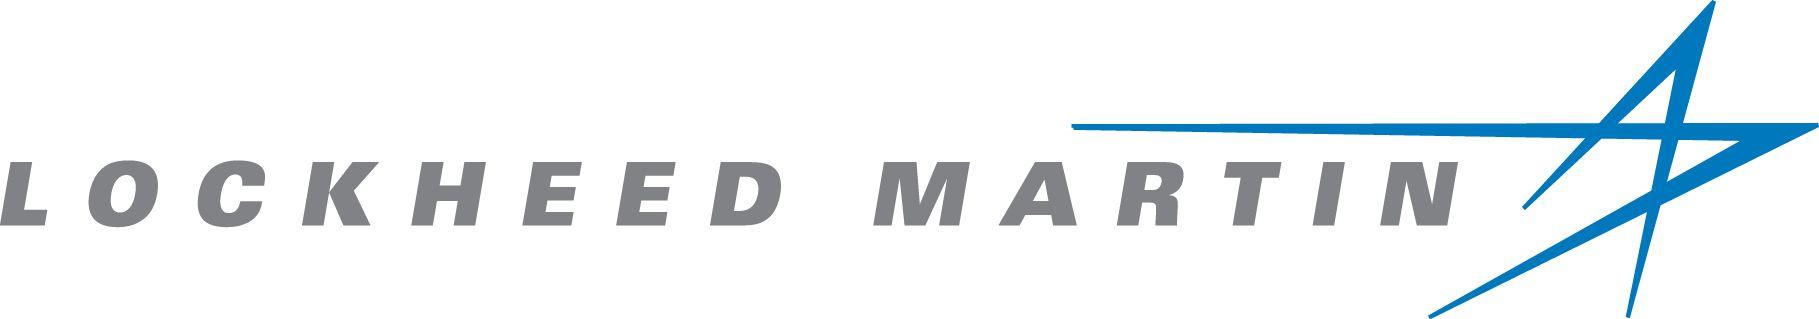 Lockheed Martin Logo - Lockheed martin Logos